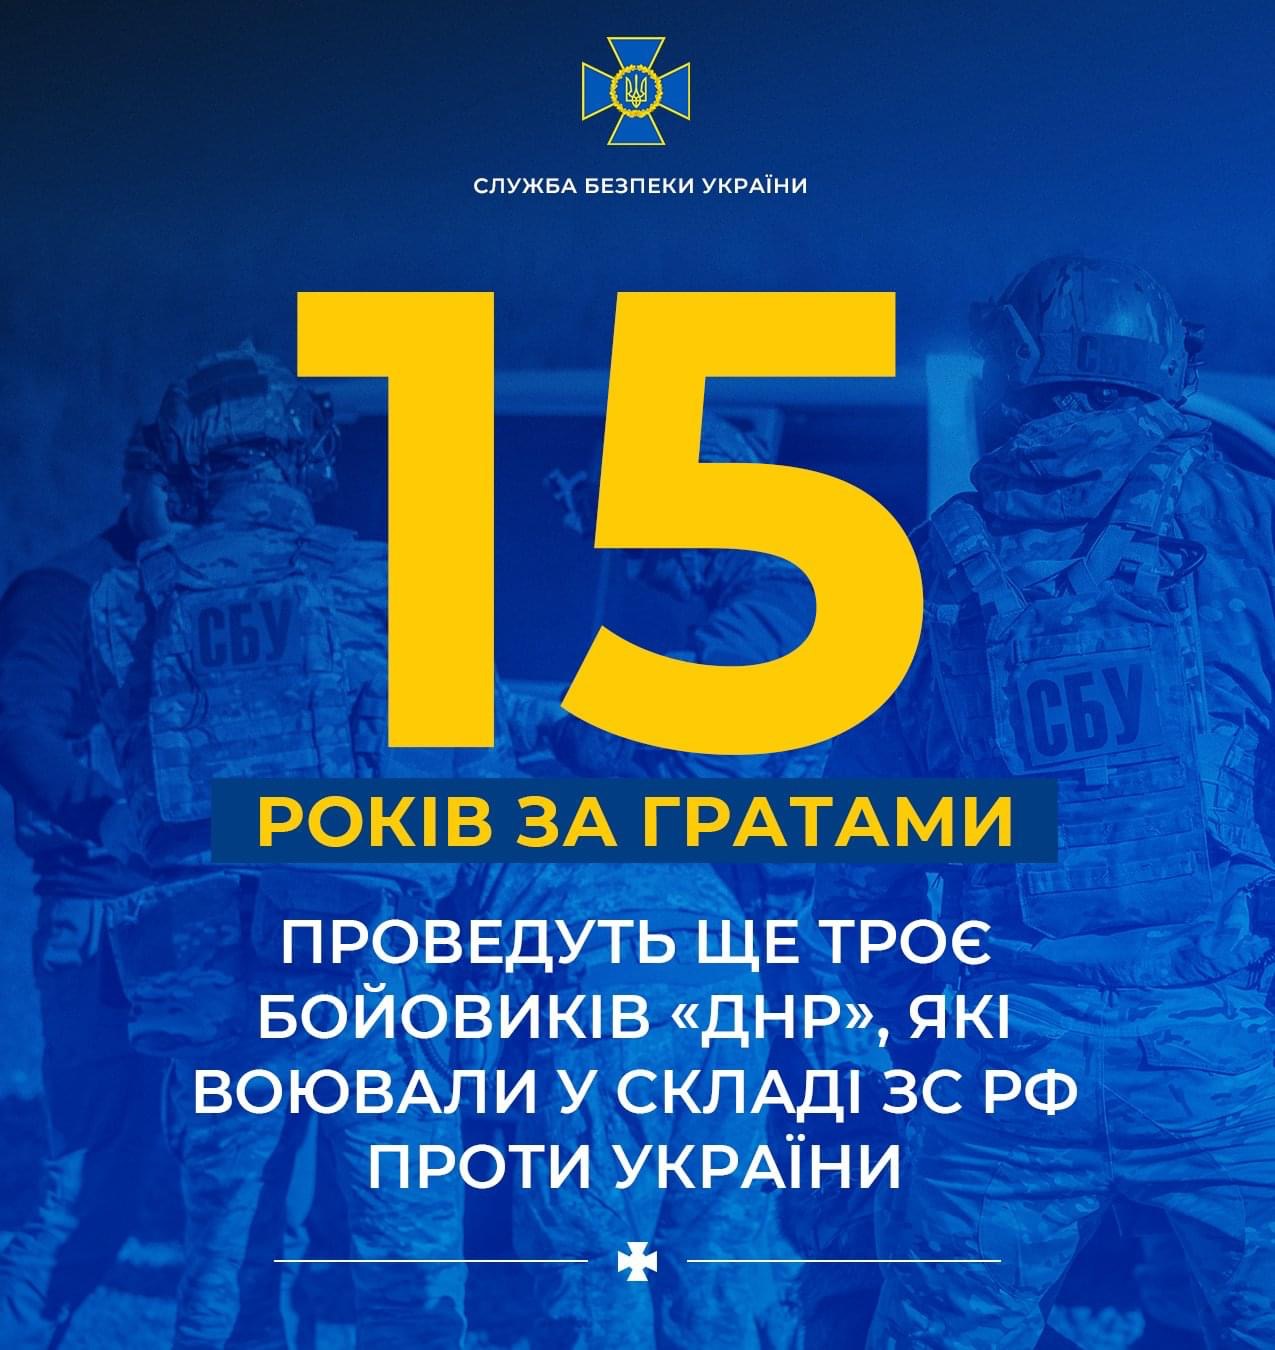 Троє бойовиків «днр», які воювали проти України, проведуть 15 років за ґратами